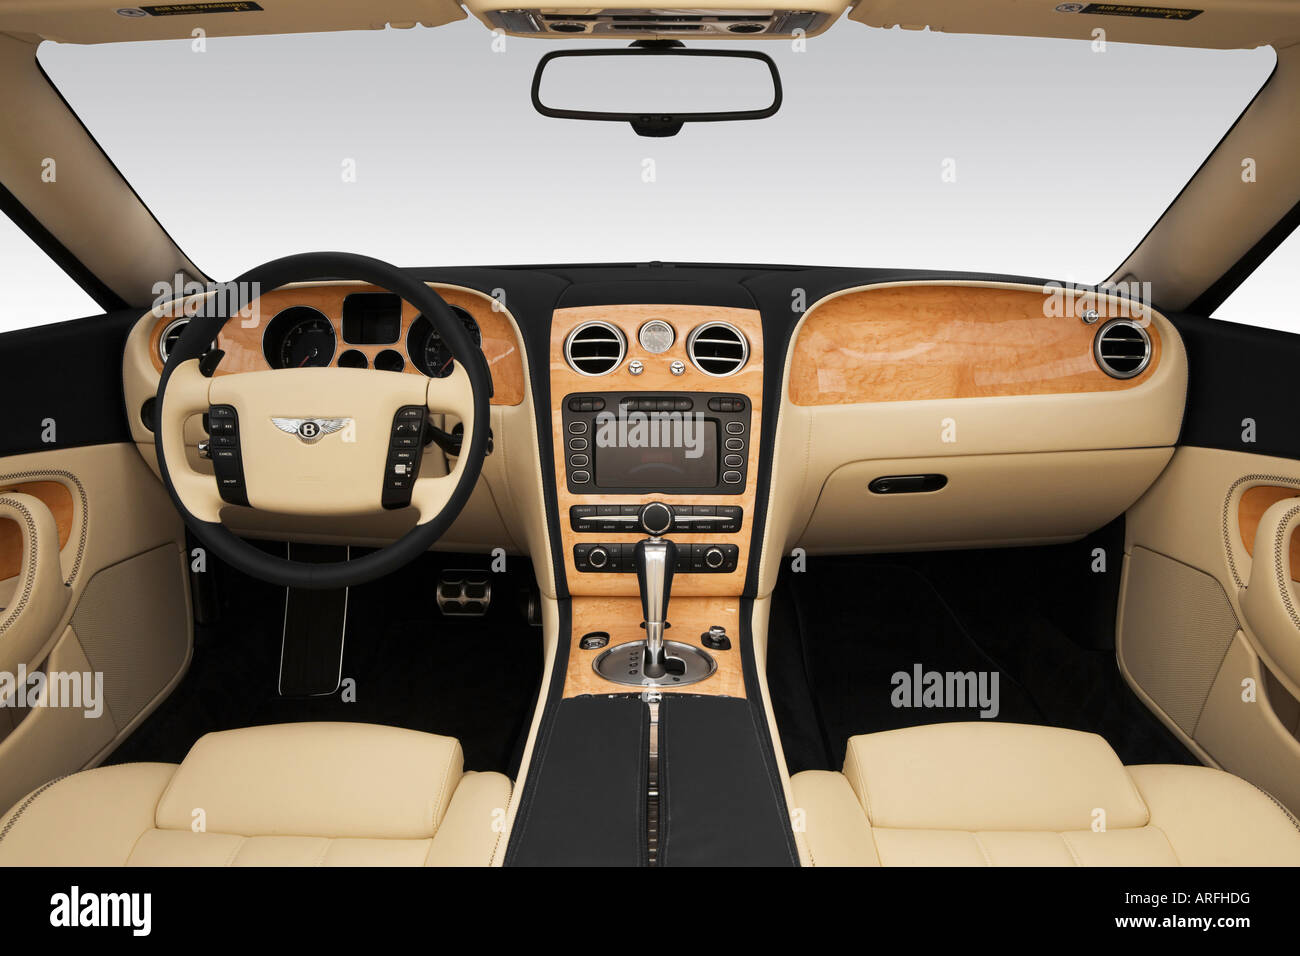 2007 Bentley Continental GTC in blau - Armaturenbrett, Mittelkonsole,  Getriebe Schalthebel Ansicht Stockfotografie - Alamy